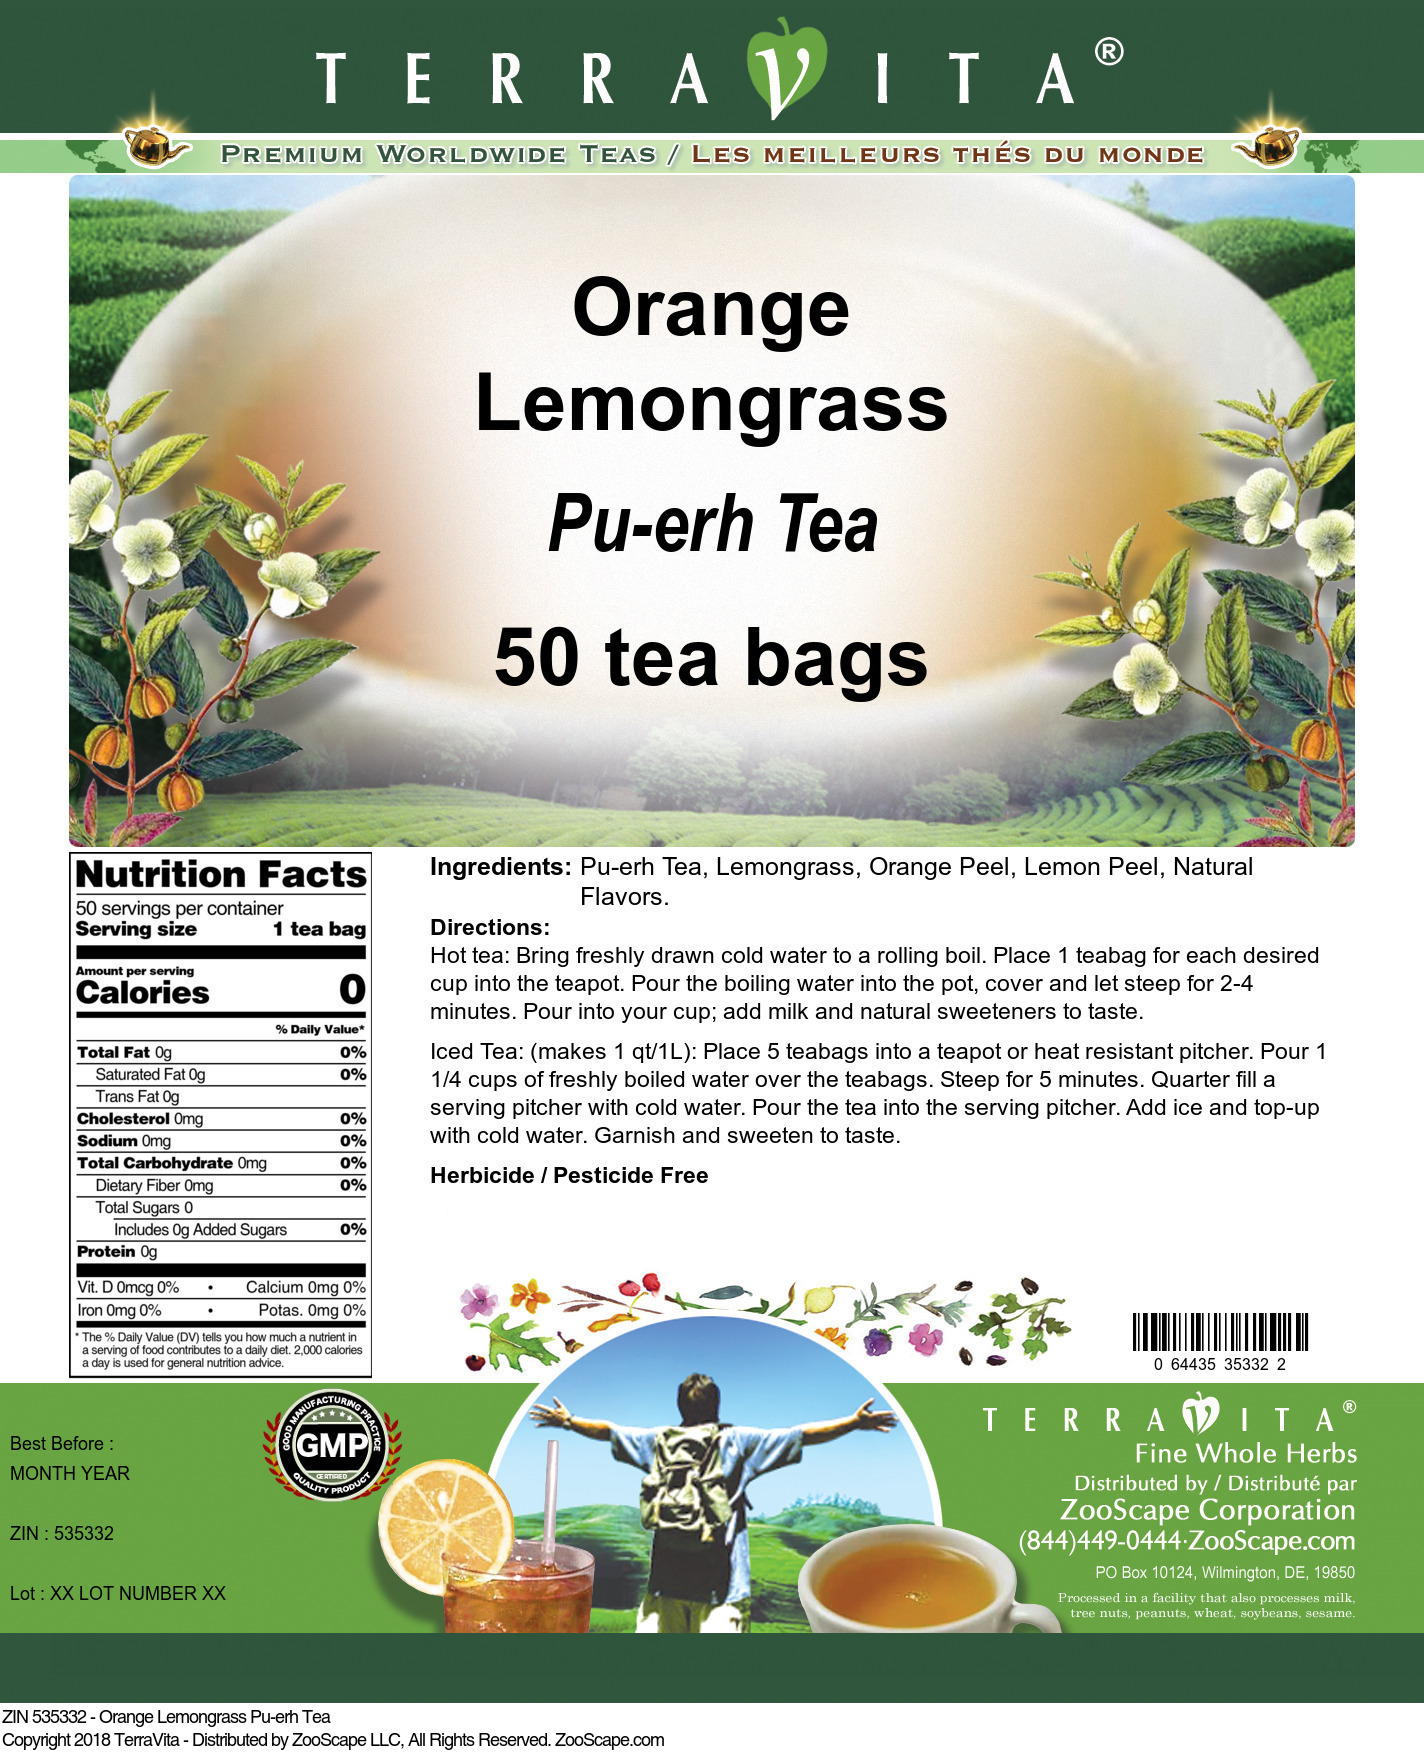 Orange Lemongrass Pu-erh Tea - Label